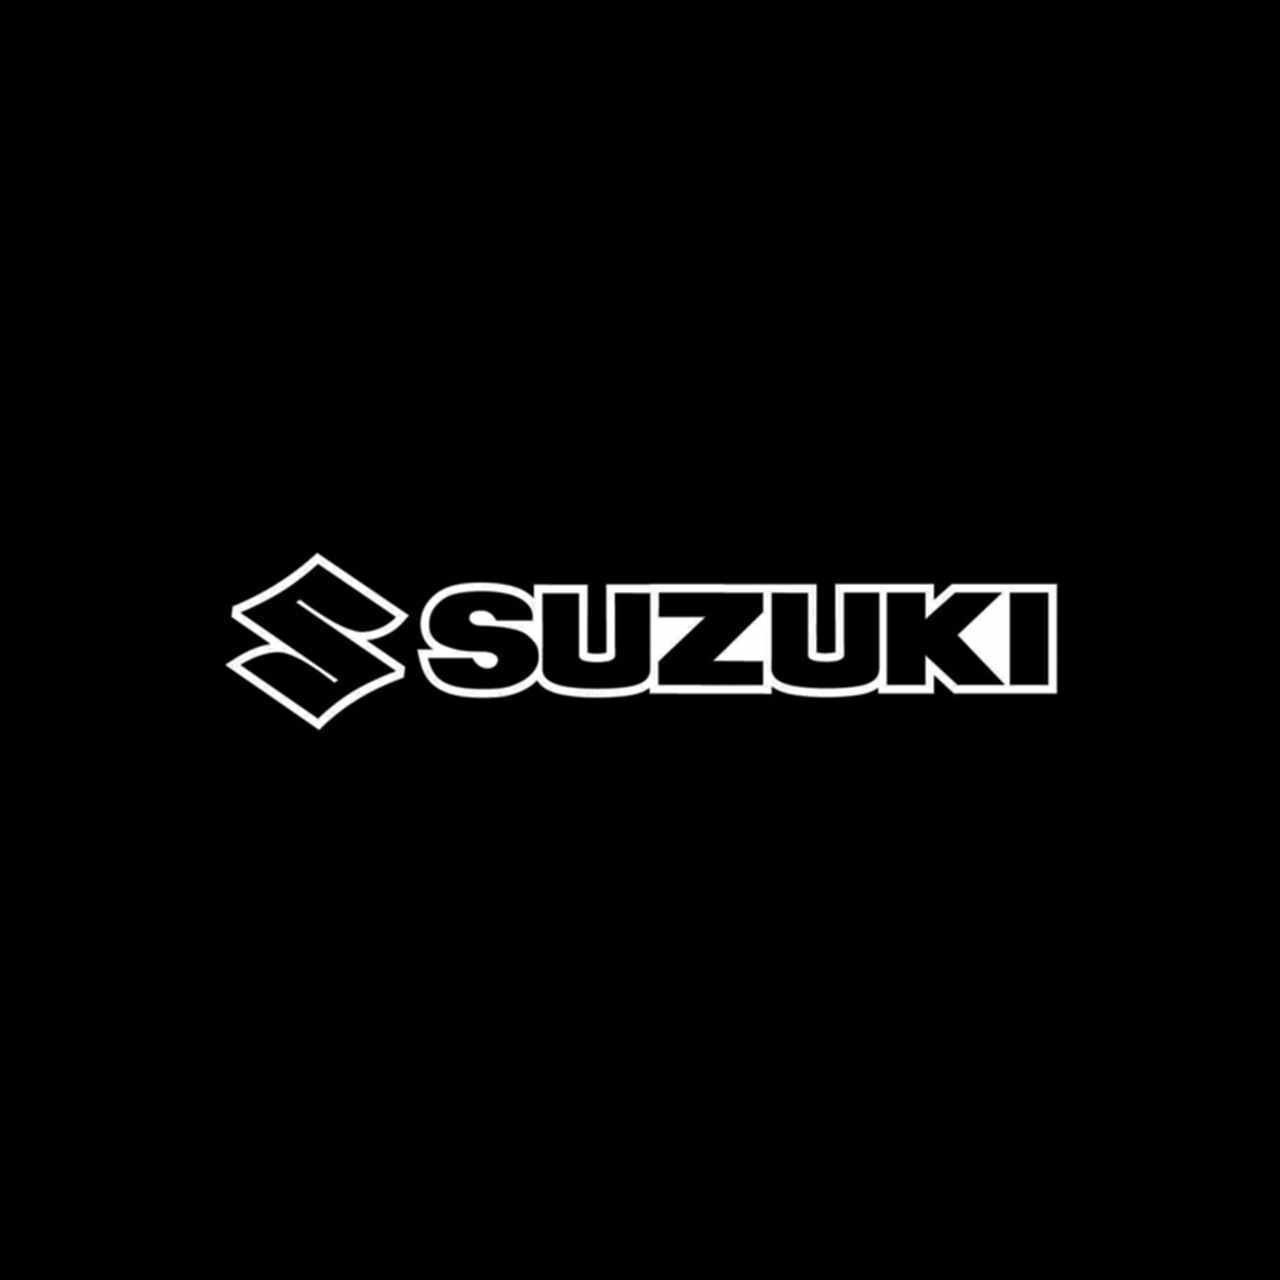 Suzuki stickers